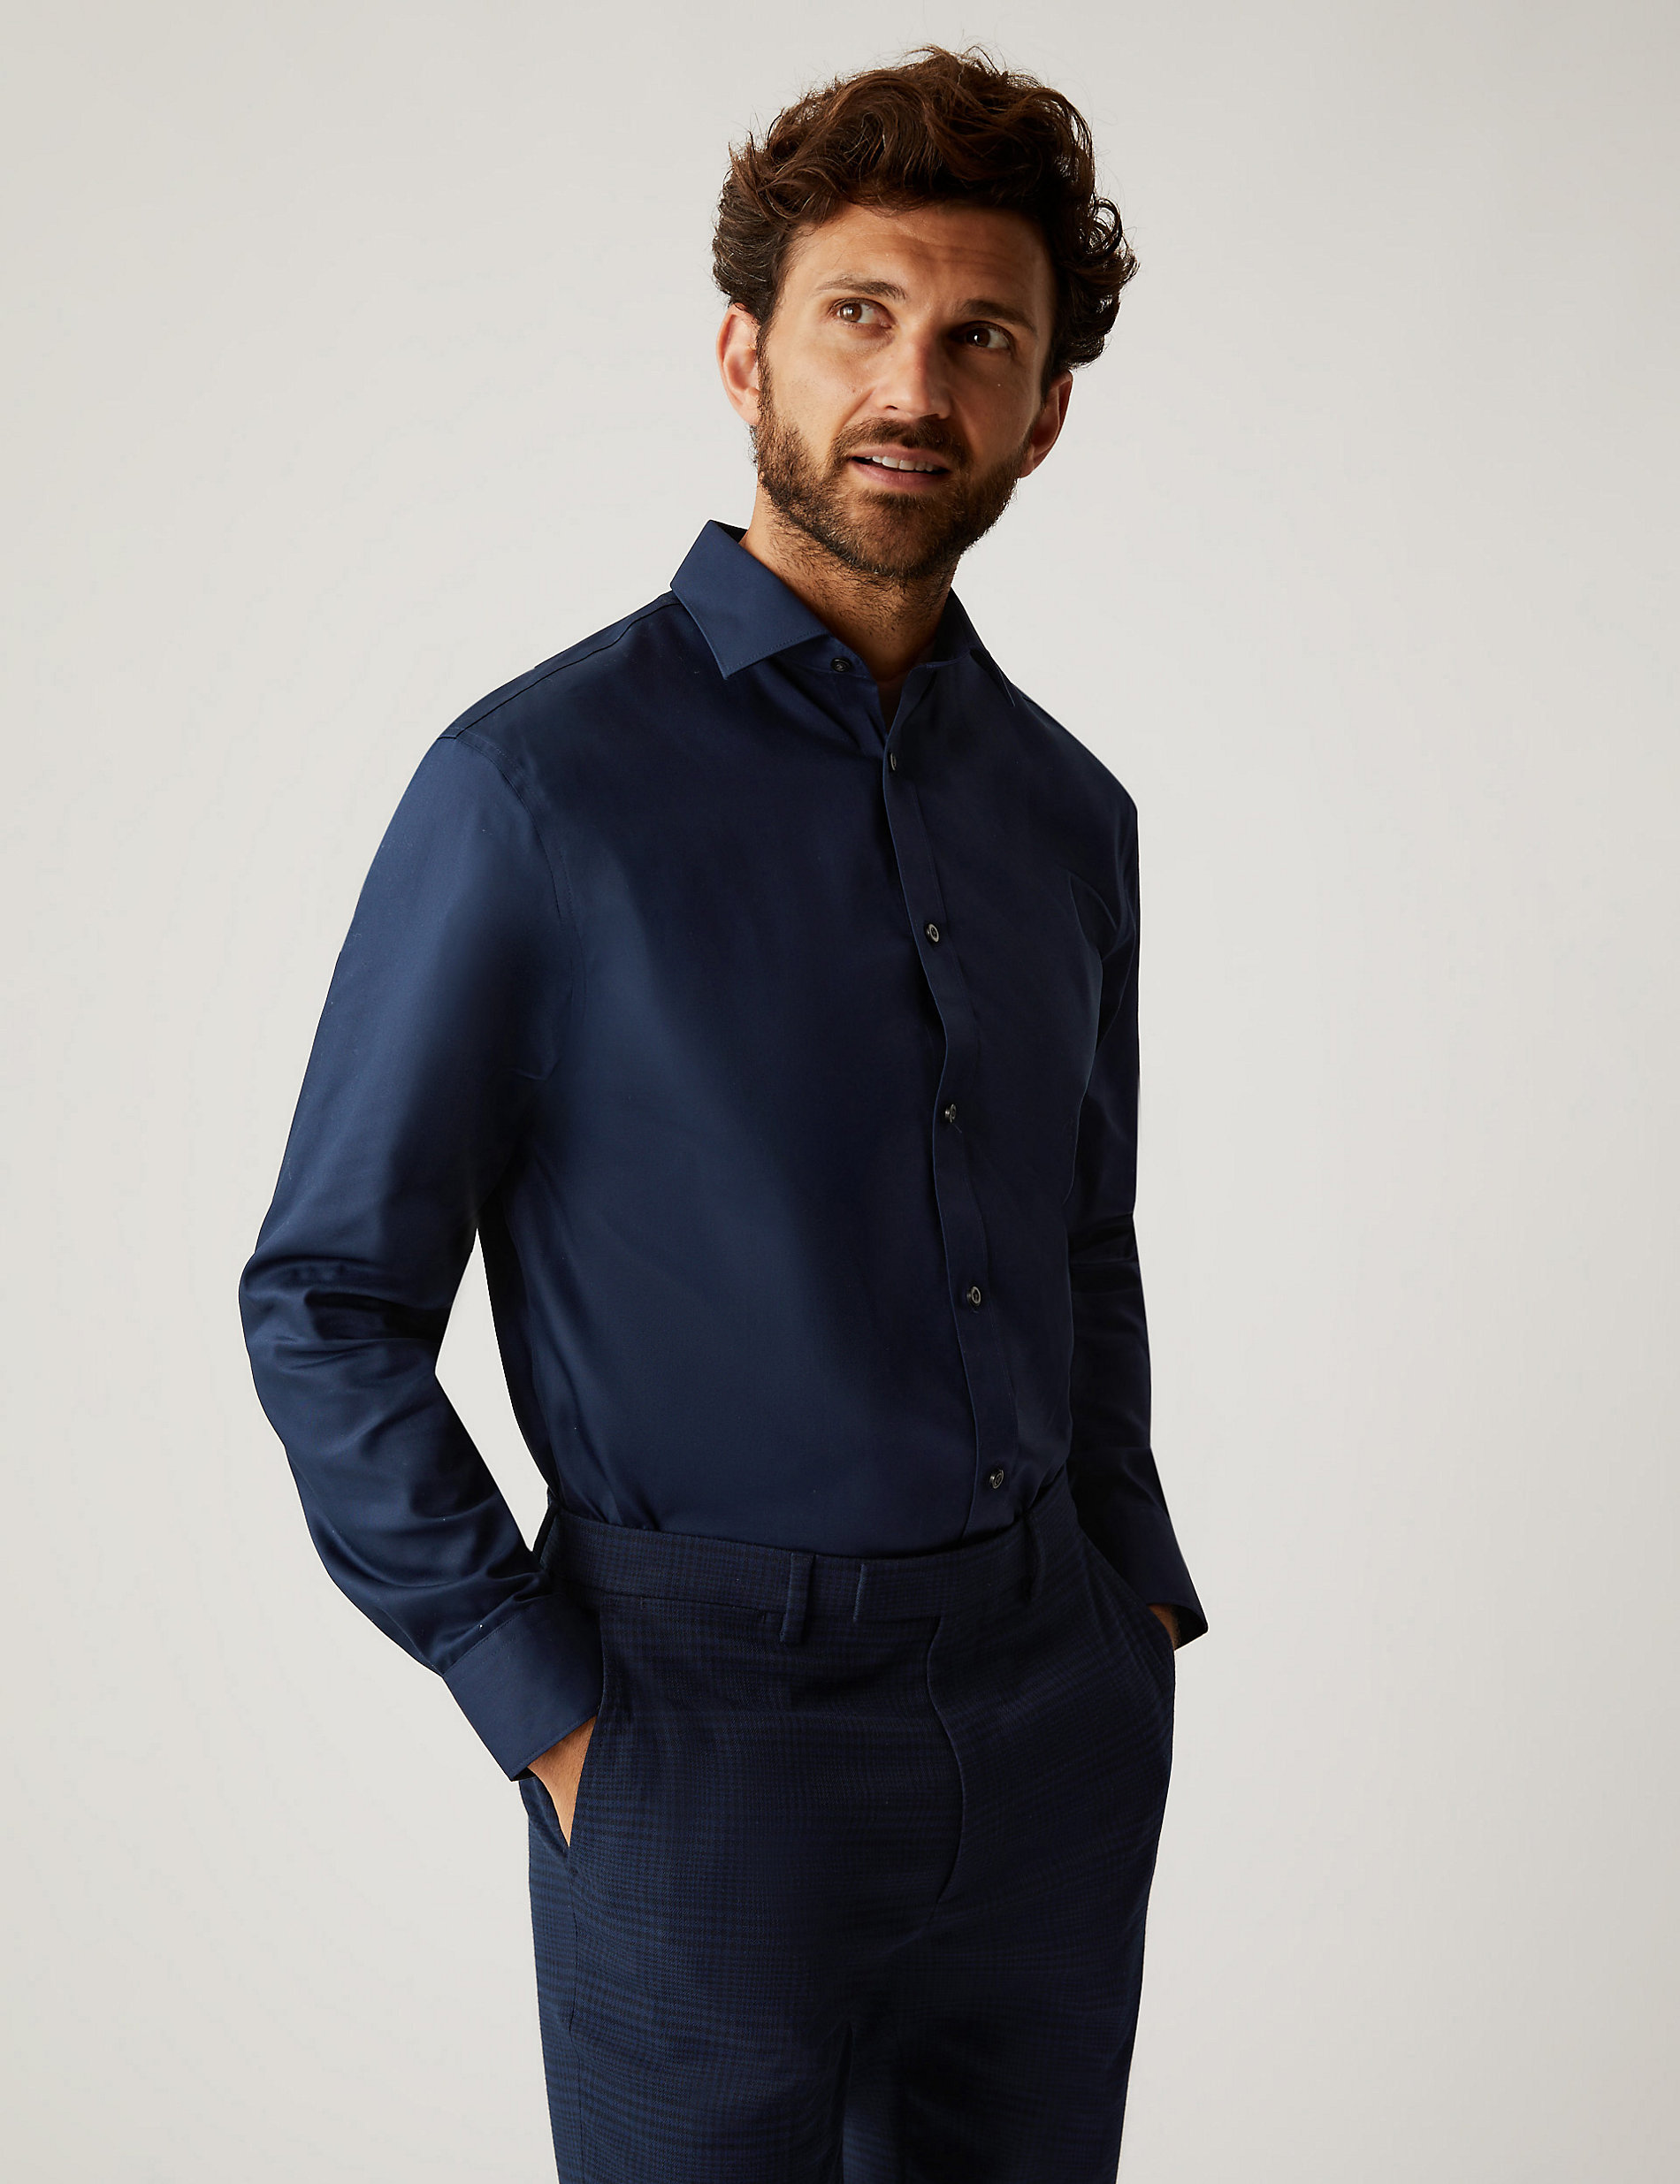 Рубашка обычного кроя из чистого хлопка без глажки Marks & Spencer, темно-синий рубашка обычного кроя из чистого хлопка без глажки marks